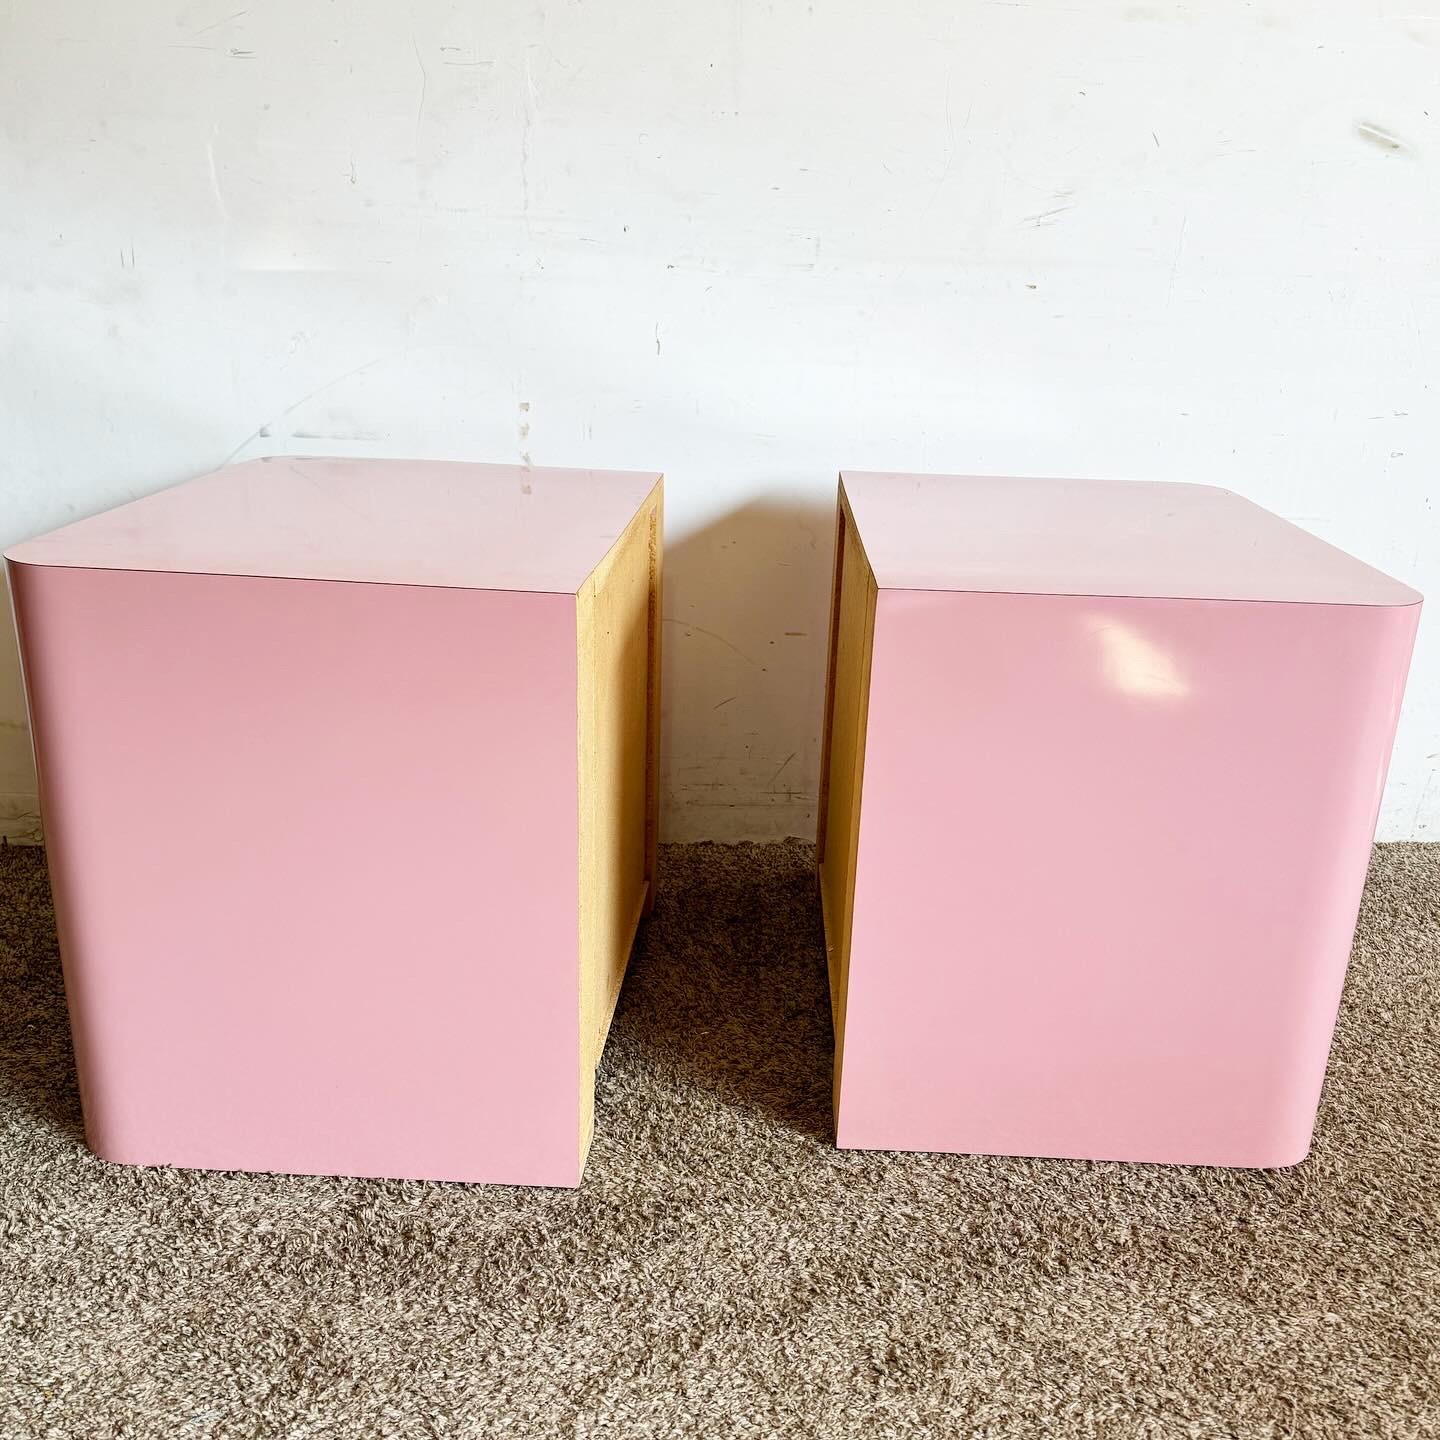 Ajoutez une touche de modernité à votre chambre à coucher avec ces tables de nuit postmodernes en stratifié laqué rose avec poignées chromées. La teinte rose audacieuse et les poignées chromées élégantes créent un contraste saisissant, offrant un